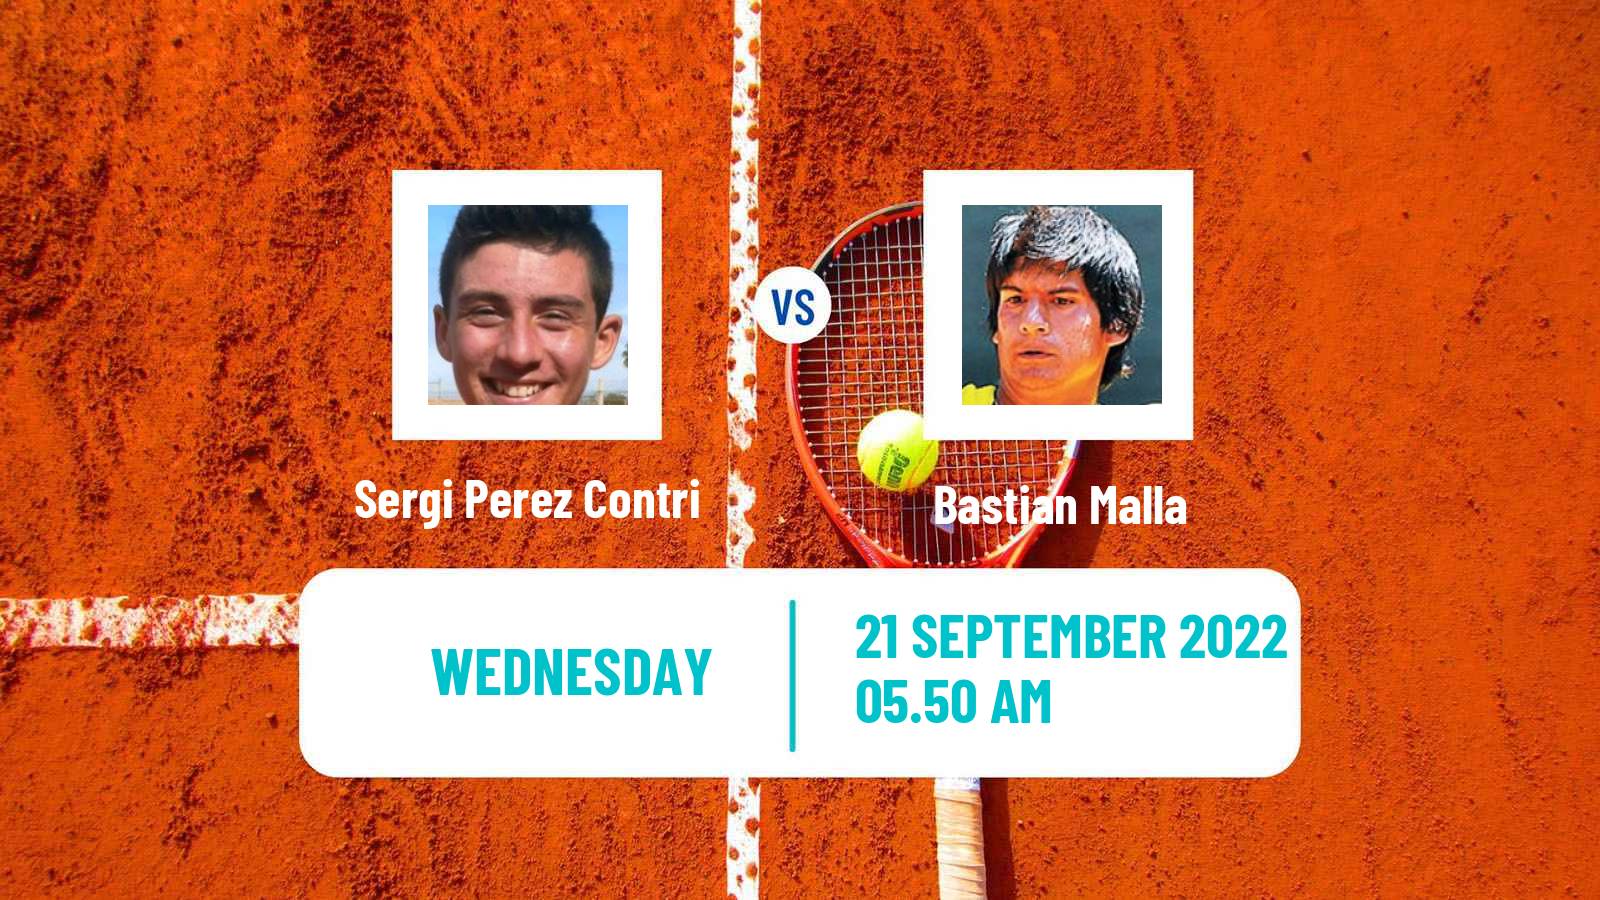 Tennis ITF Tournaments Sergi Perez Contri - Bastian Malla